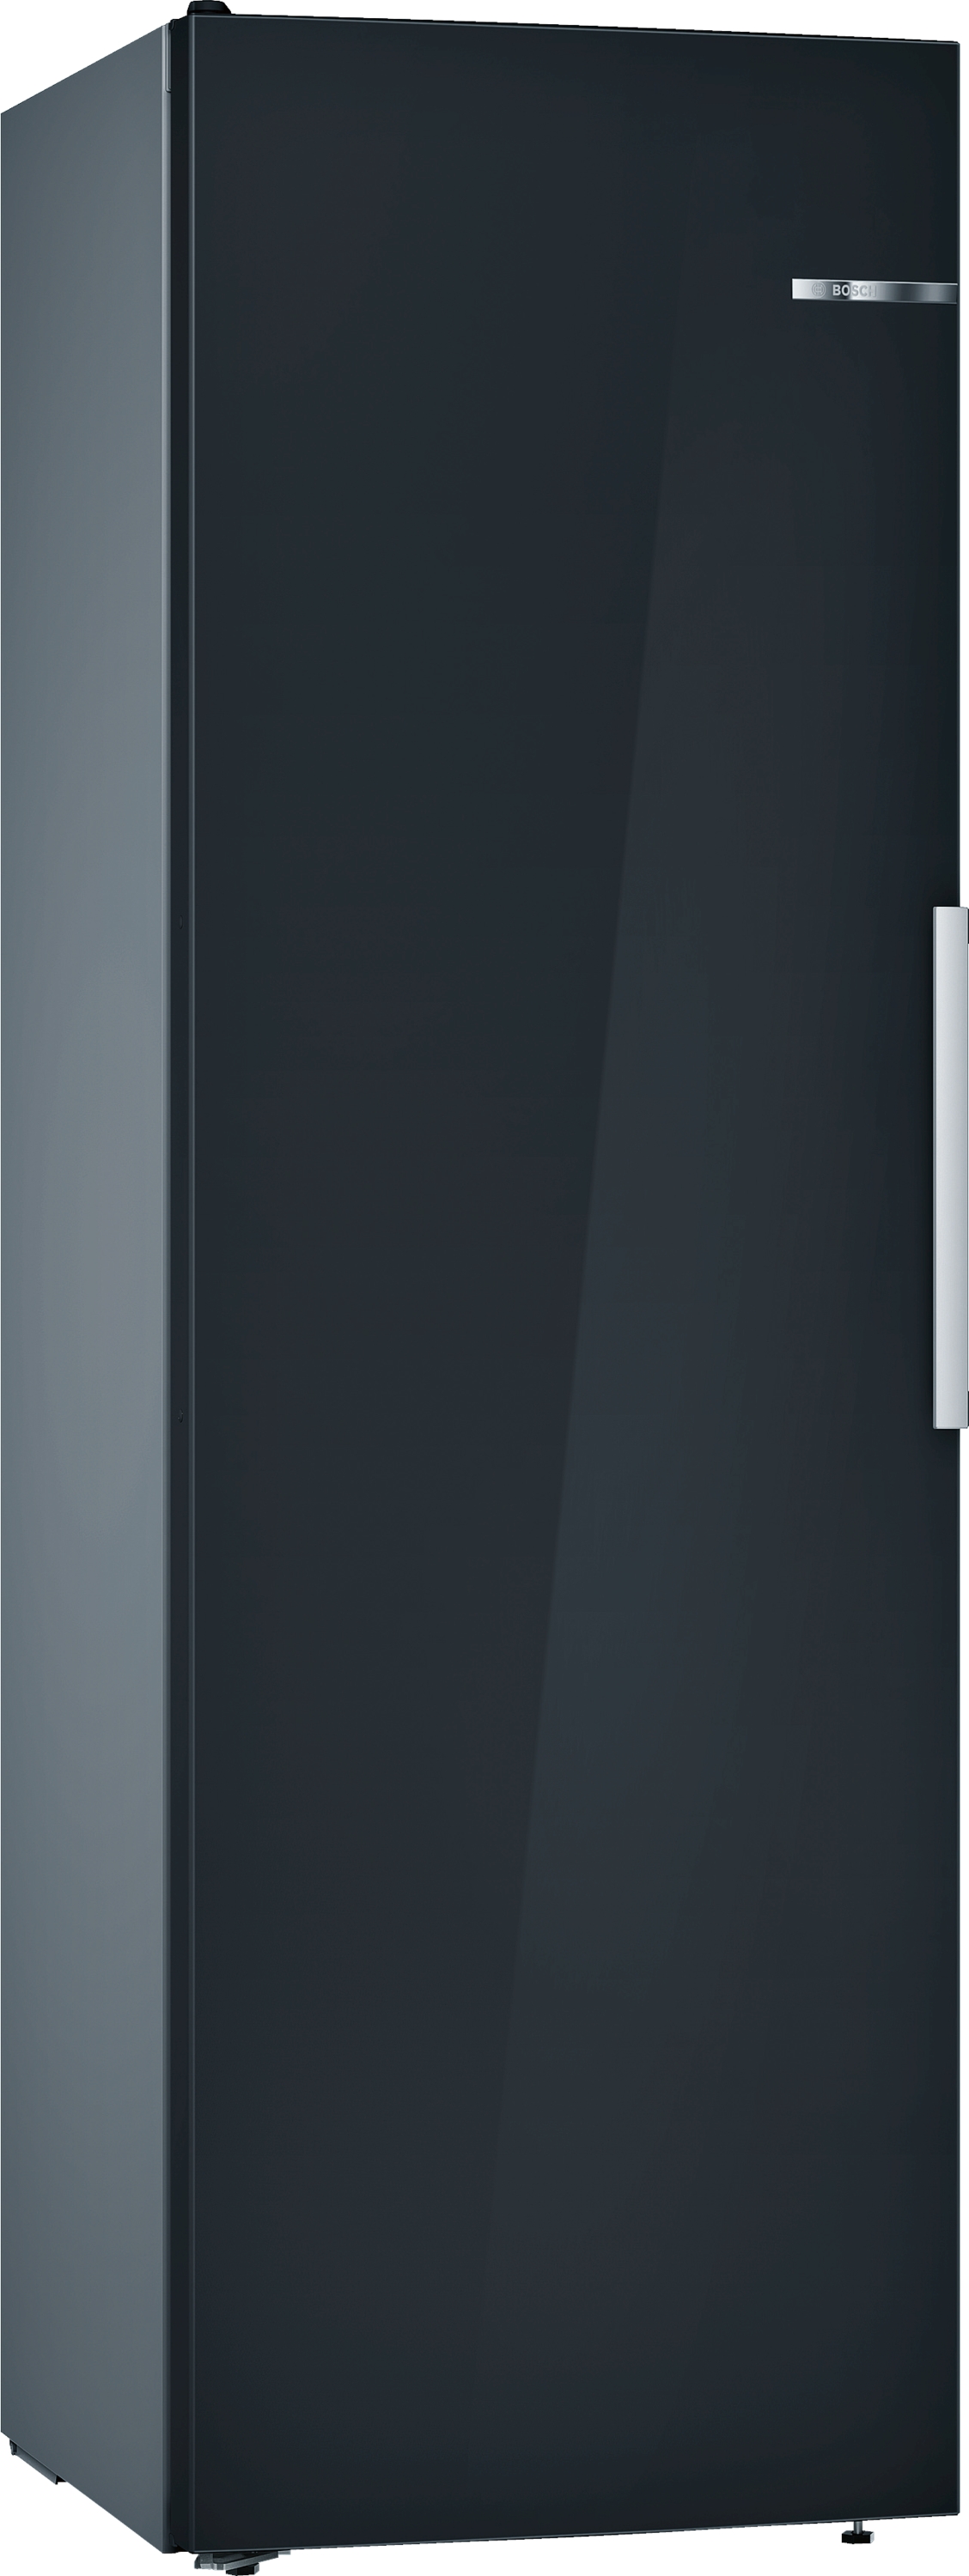 Bosch Serie 4, Freistehender Kühlschrank, 186 x 60 cm, Schwarz, KSV36VBEP |  4242005244508